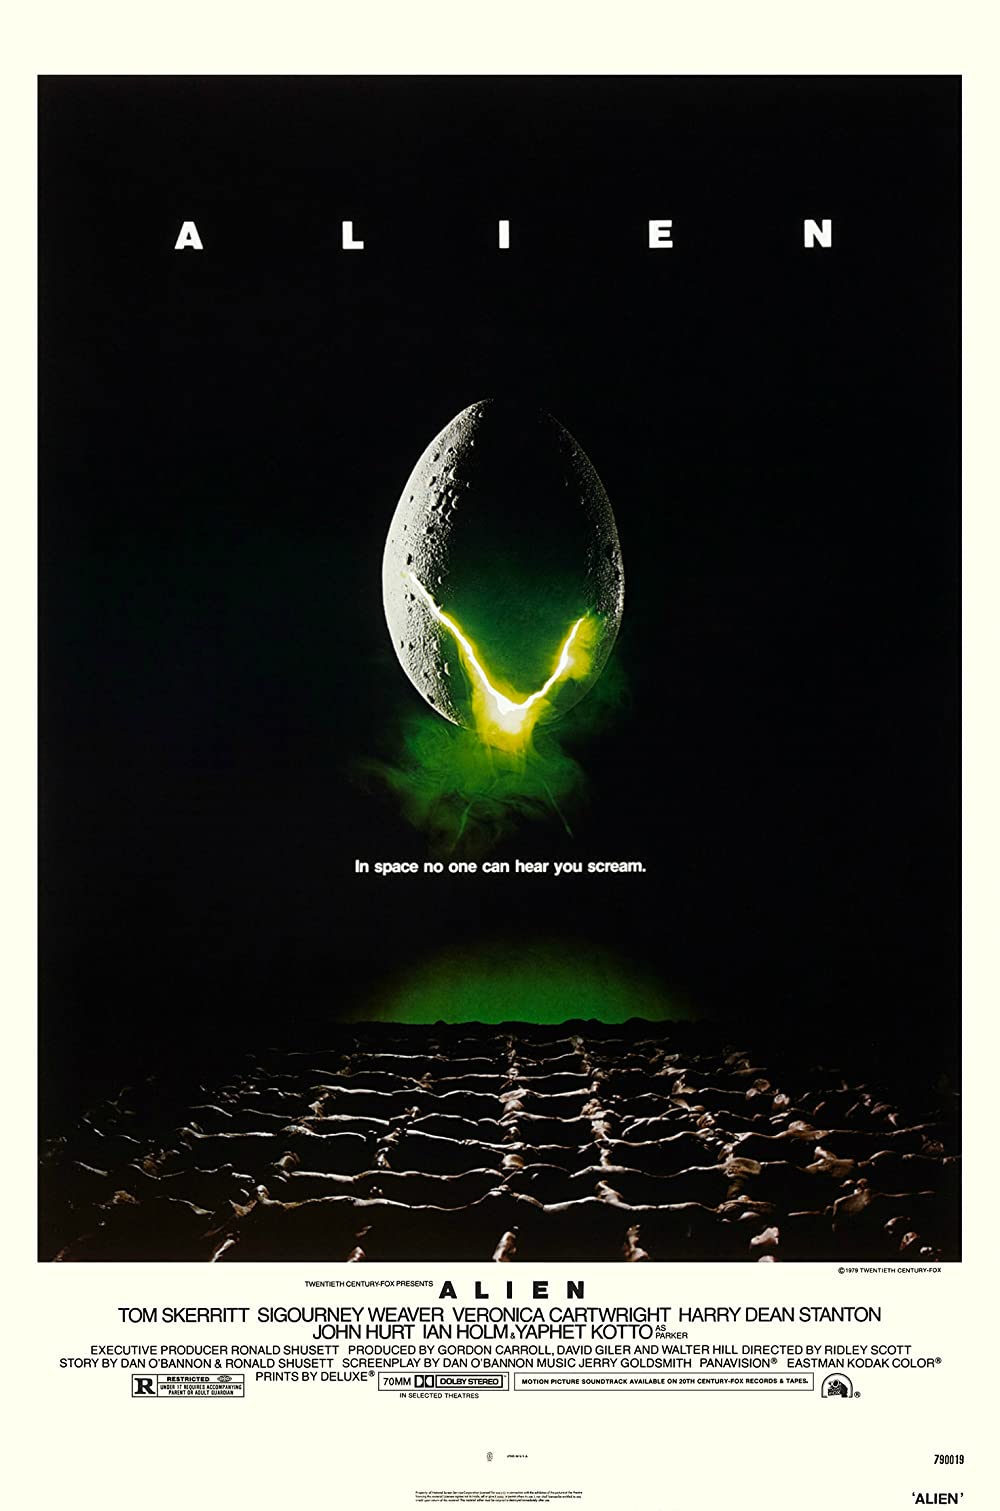 Filmbeschreibung zu Alien - Das unheimliche Wesen aus einer fremden Welt